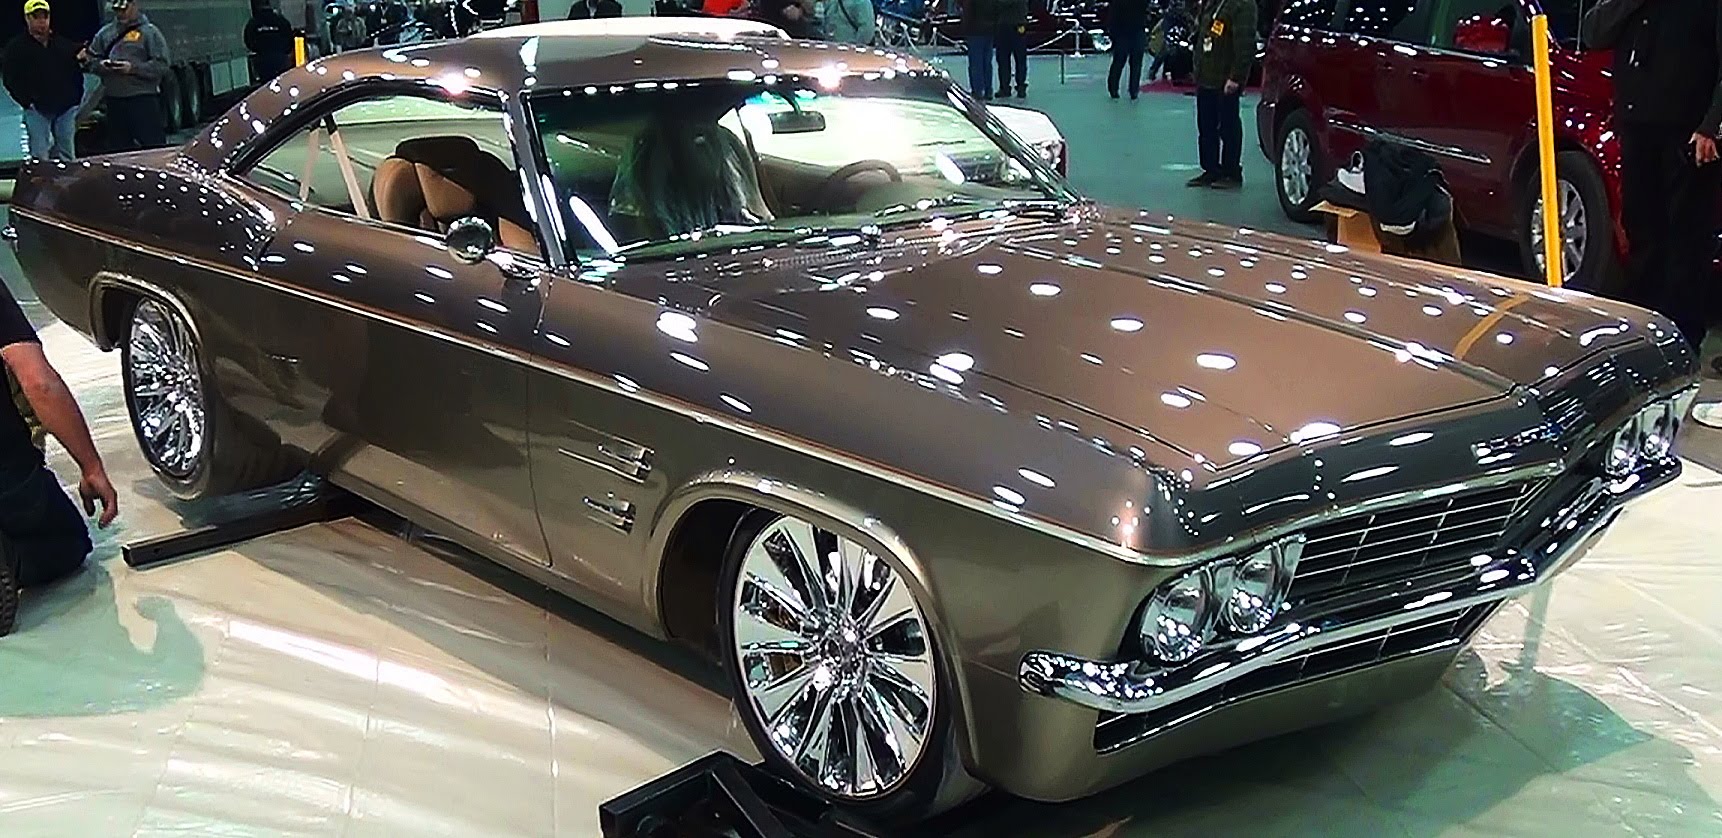 65 Impala The Imposter Foose Design 2015